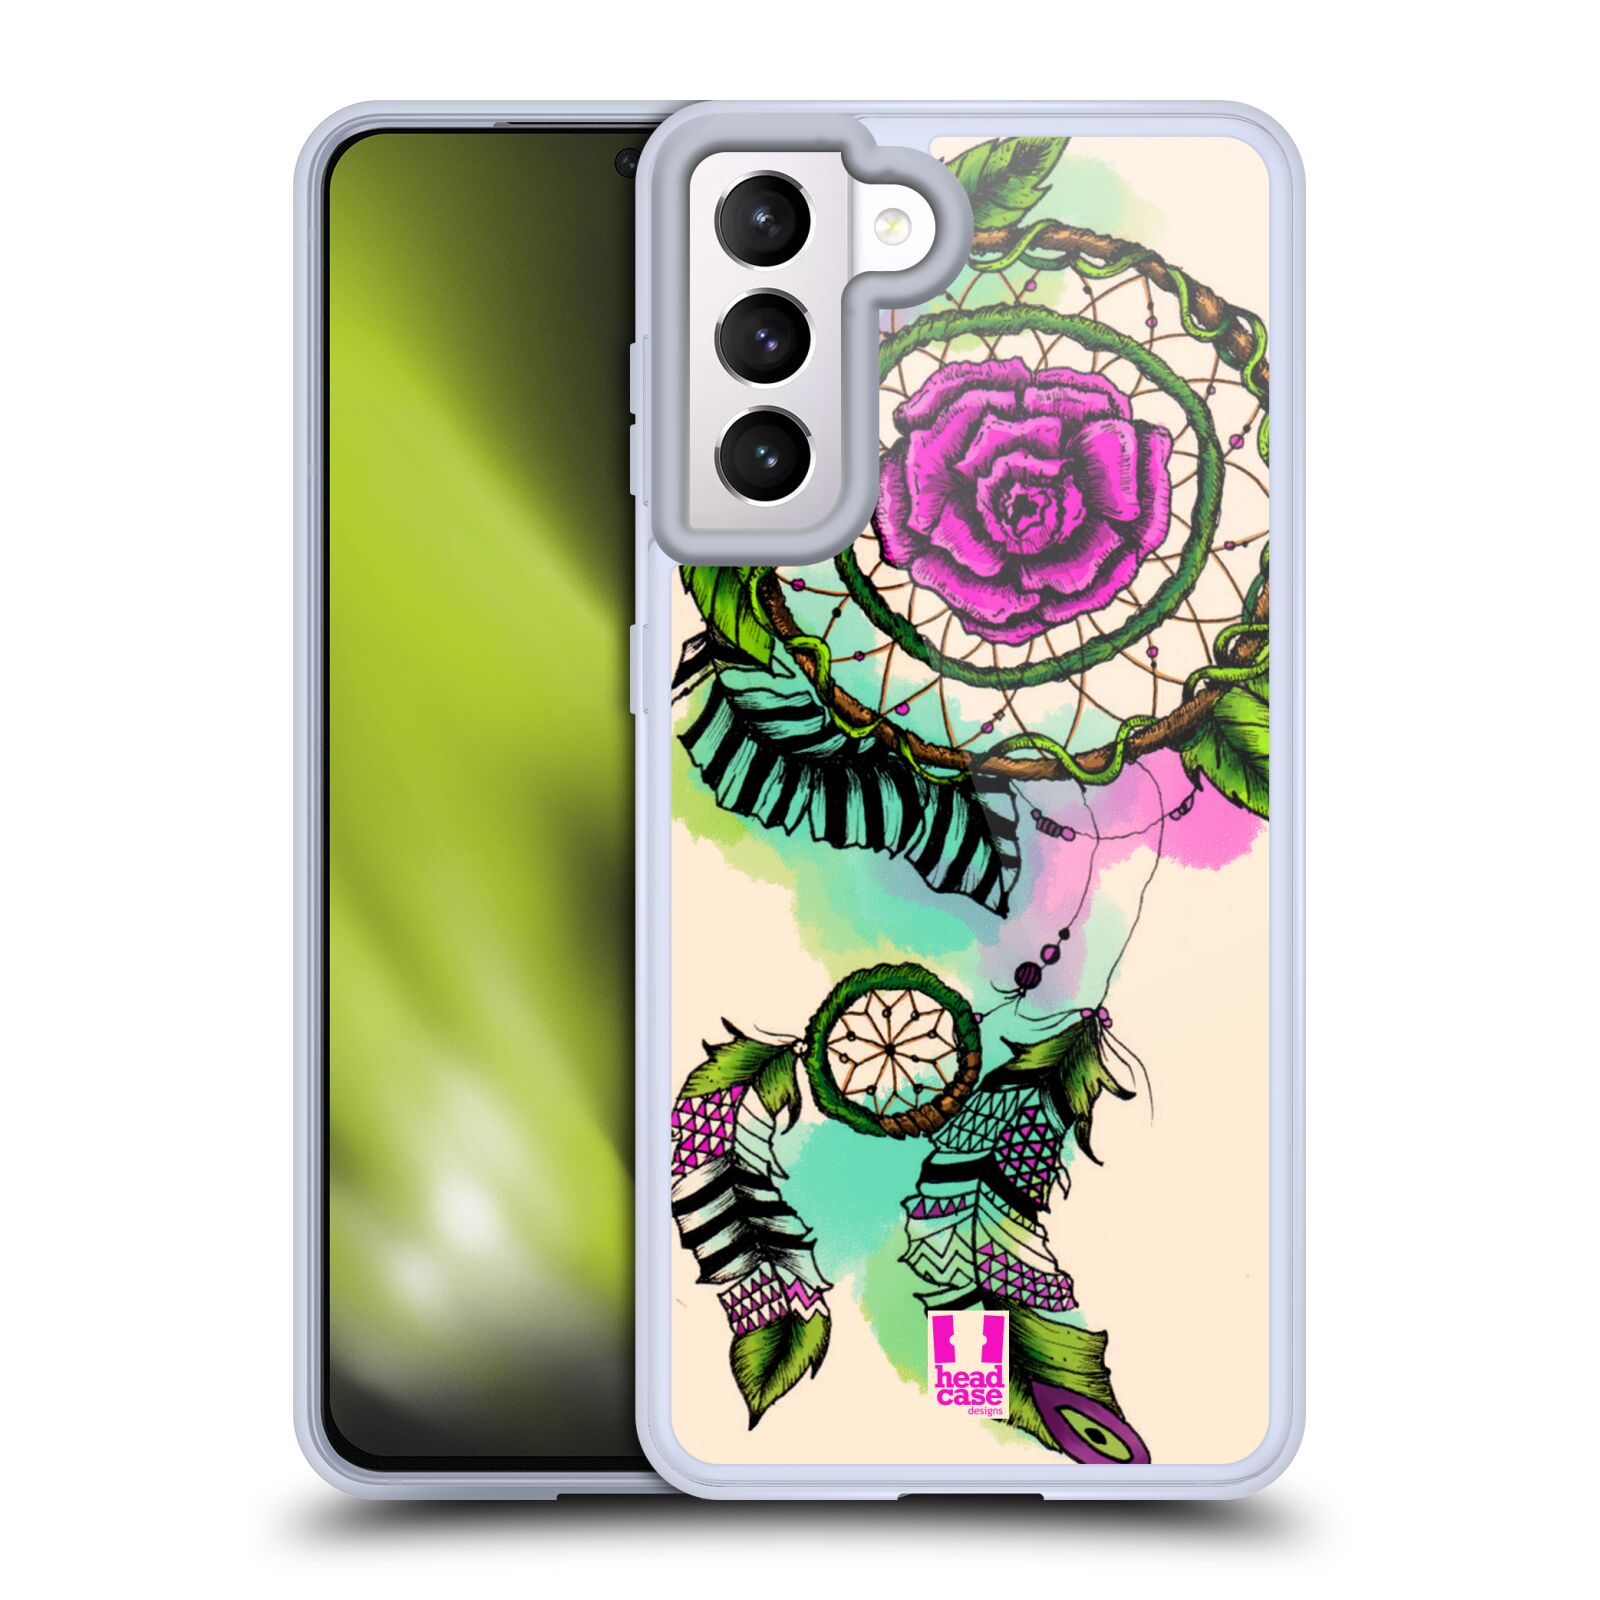 Plastový obal HEAD CASE na mobil Samsung Galaxy S21 5G vzor Květy lapač snů růže